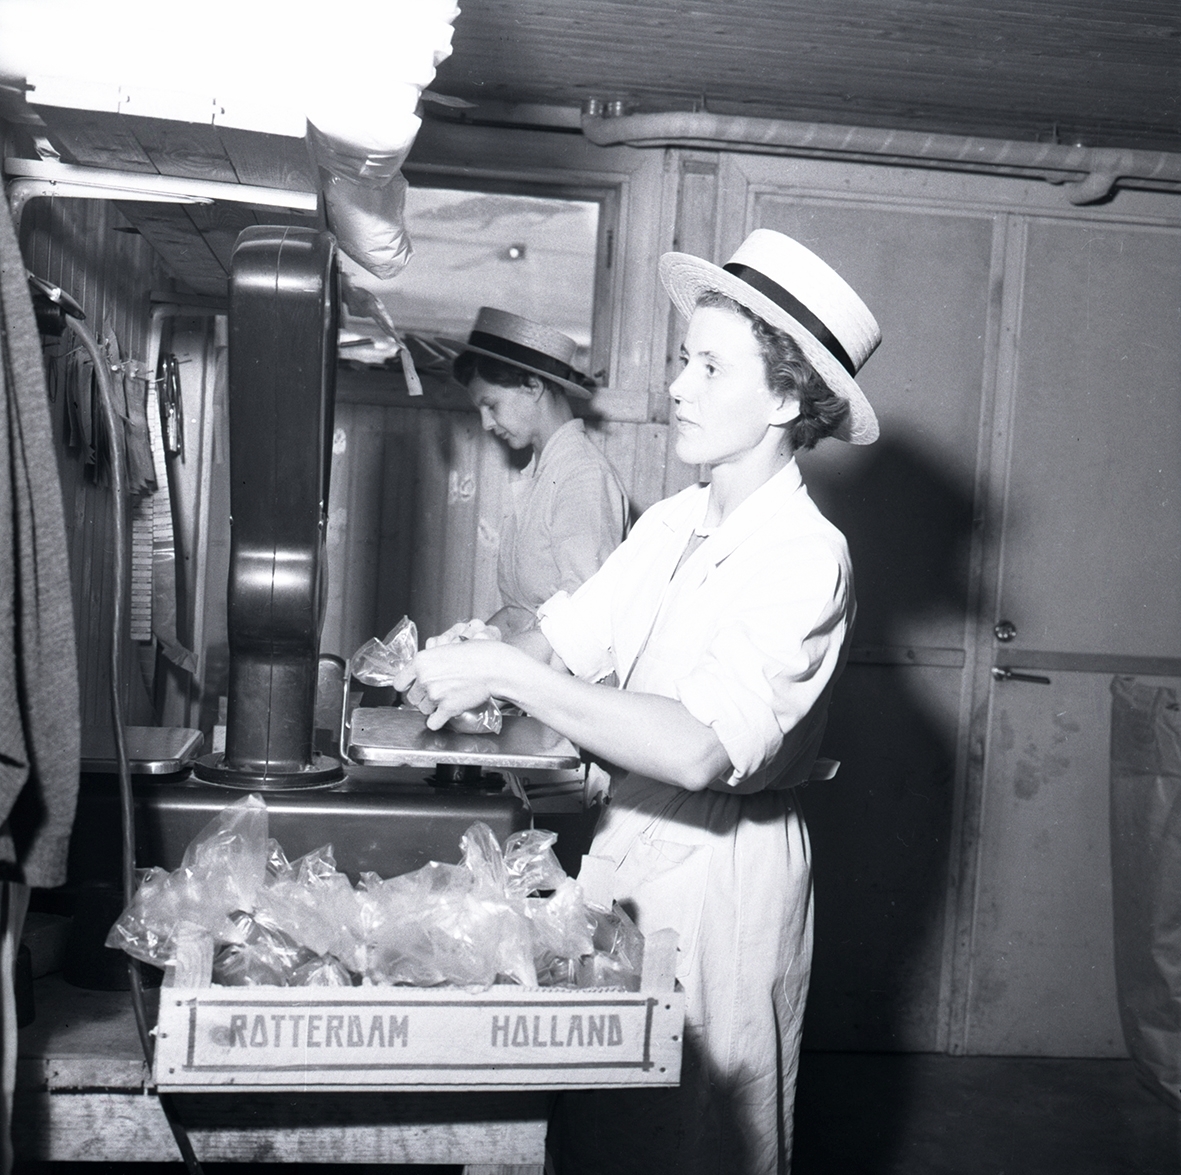 Två kvinnor står och arbetar vid en våg i en konsumbutik.